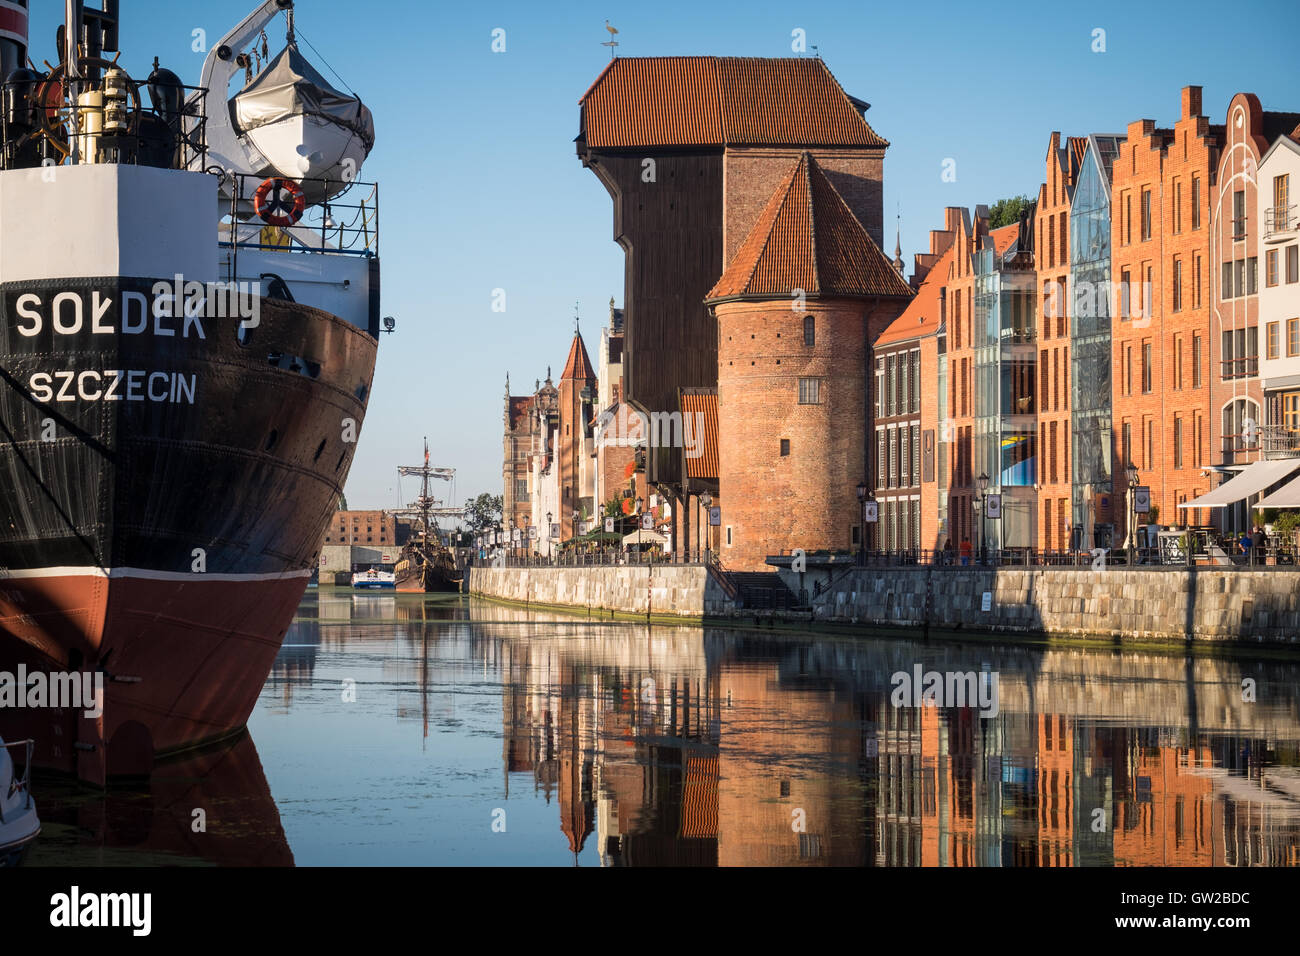 Die historischen Kran und Schiff, Soldek, in der Altstadt von Danzig, Polen. Stockfoto